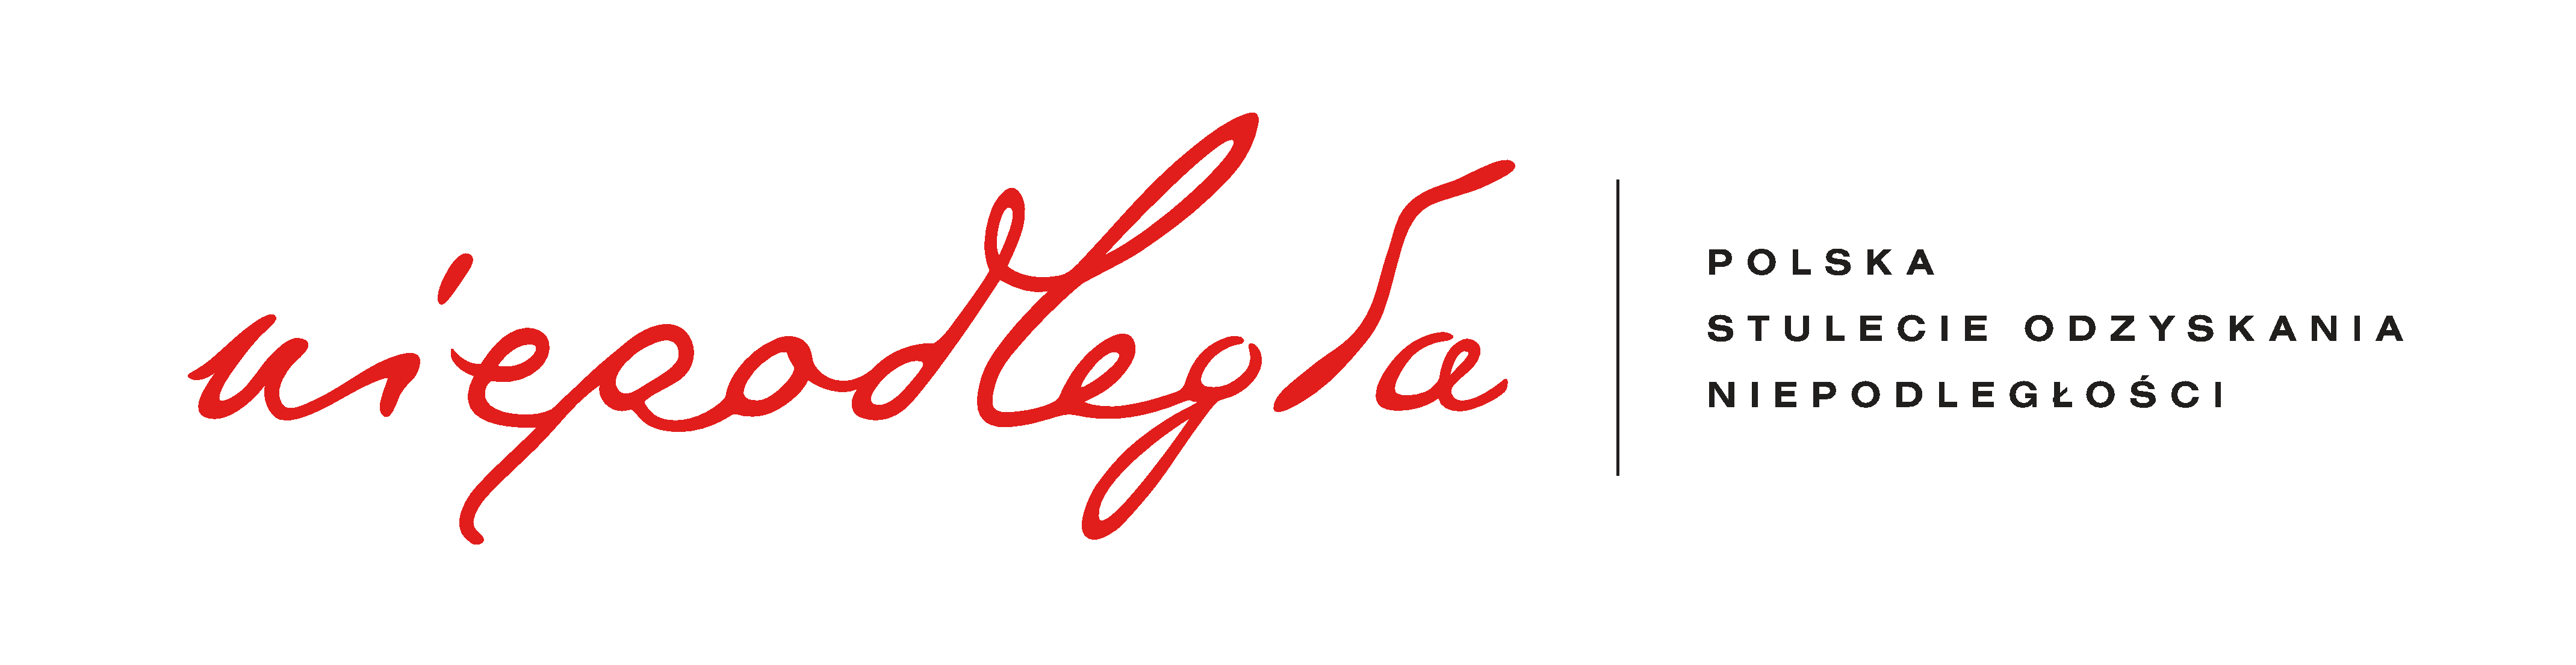 Logo programu: Na prostokątnym białym tle czerwony napis niepodległa, nakreślony odręcznym pismem Józefa Piłsudskiego. Litery małe, krągłe, lekko pochylone w prawo. Litery d oraz l złączone u góry ozdobną pętelką. Po prawej czarna, cienka, pionowa kreska, za nią czarny napis drobnym drukiem w trzech poziomych rzędach: Polska, poniżej - stulecie odzyskania, poniżej - niepodległości.